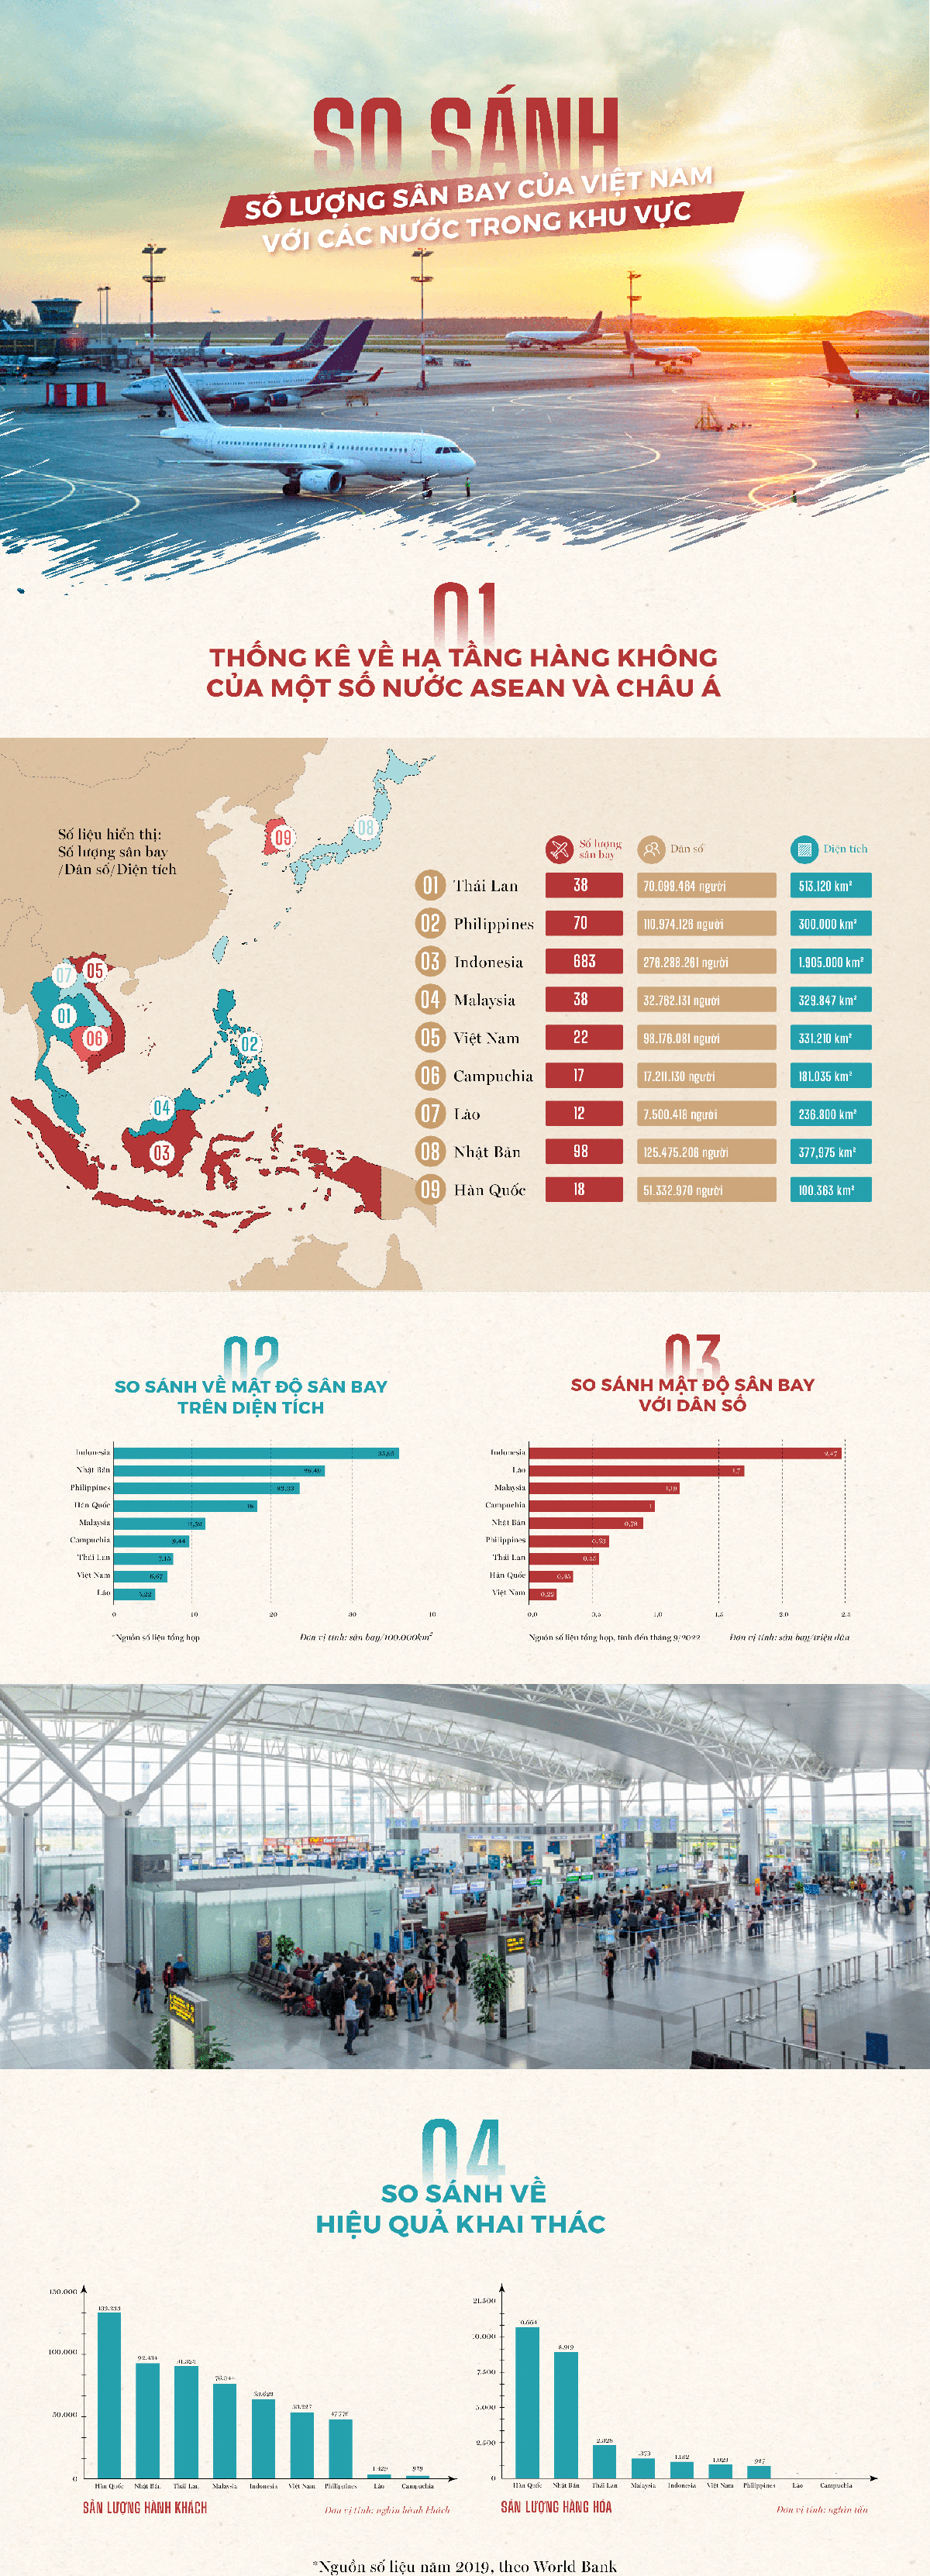 Dân số gấp 3 lần Malaysia nhưng số sân bay của Việt Nam chỉ nhiều hơn 1 nửa - 1